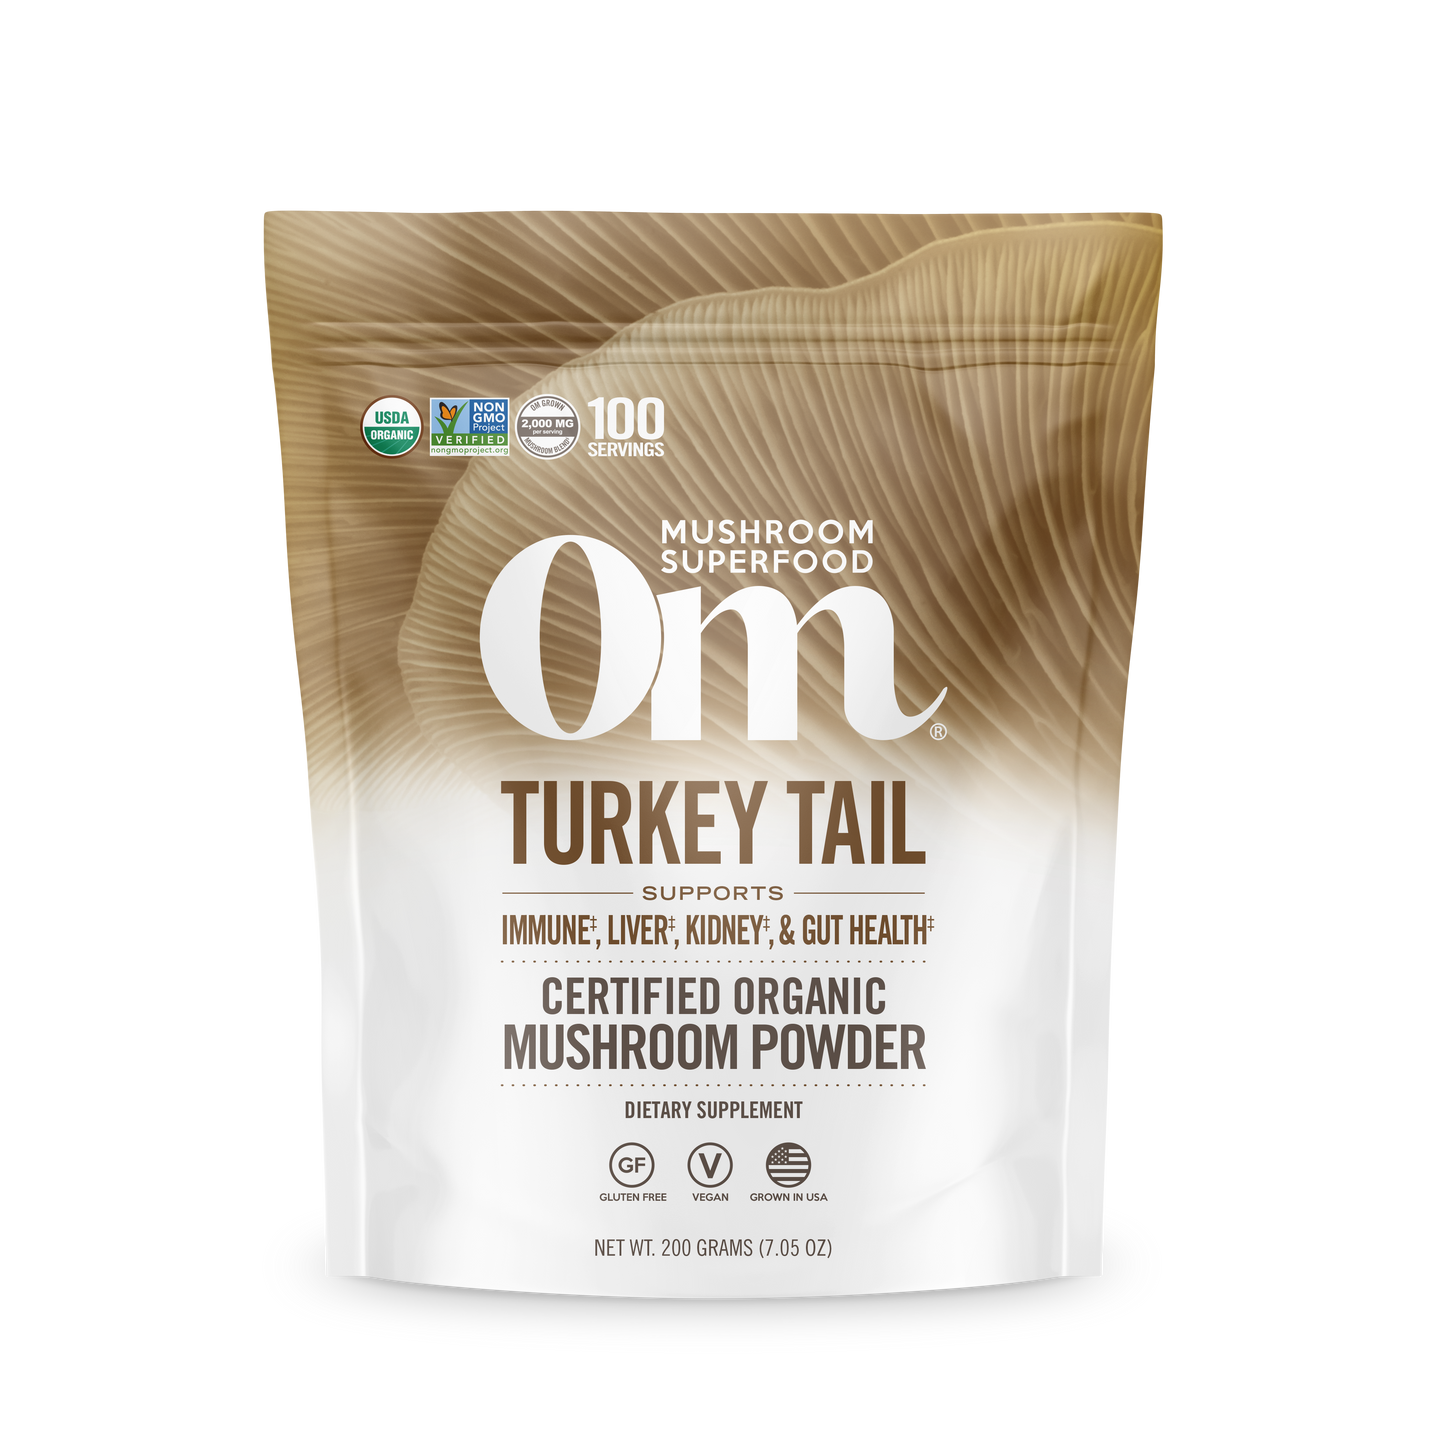 Om Turkey Tail Powder